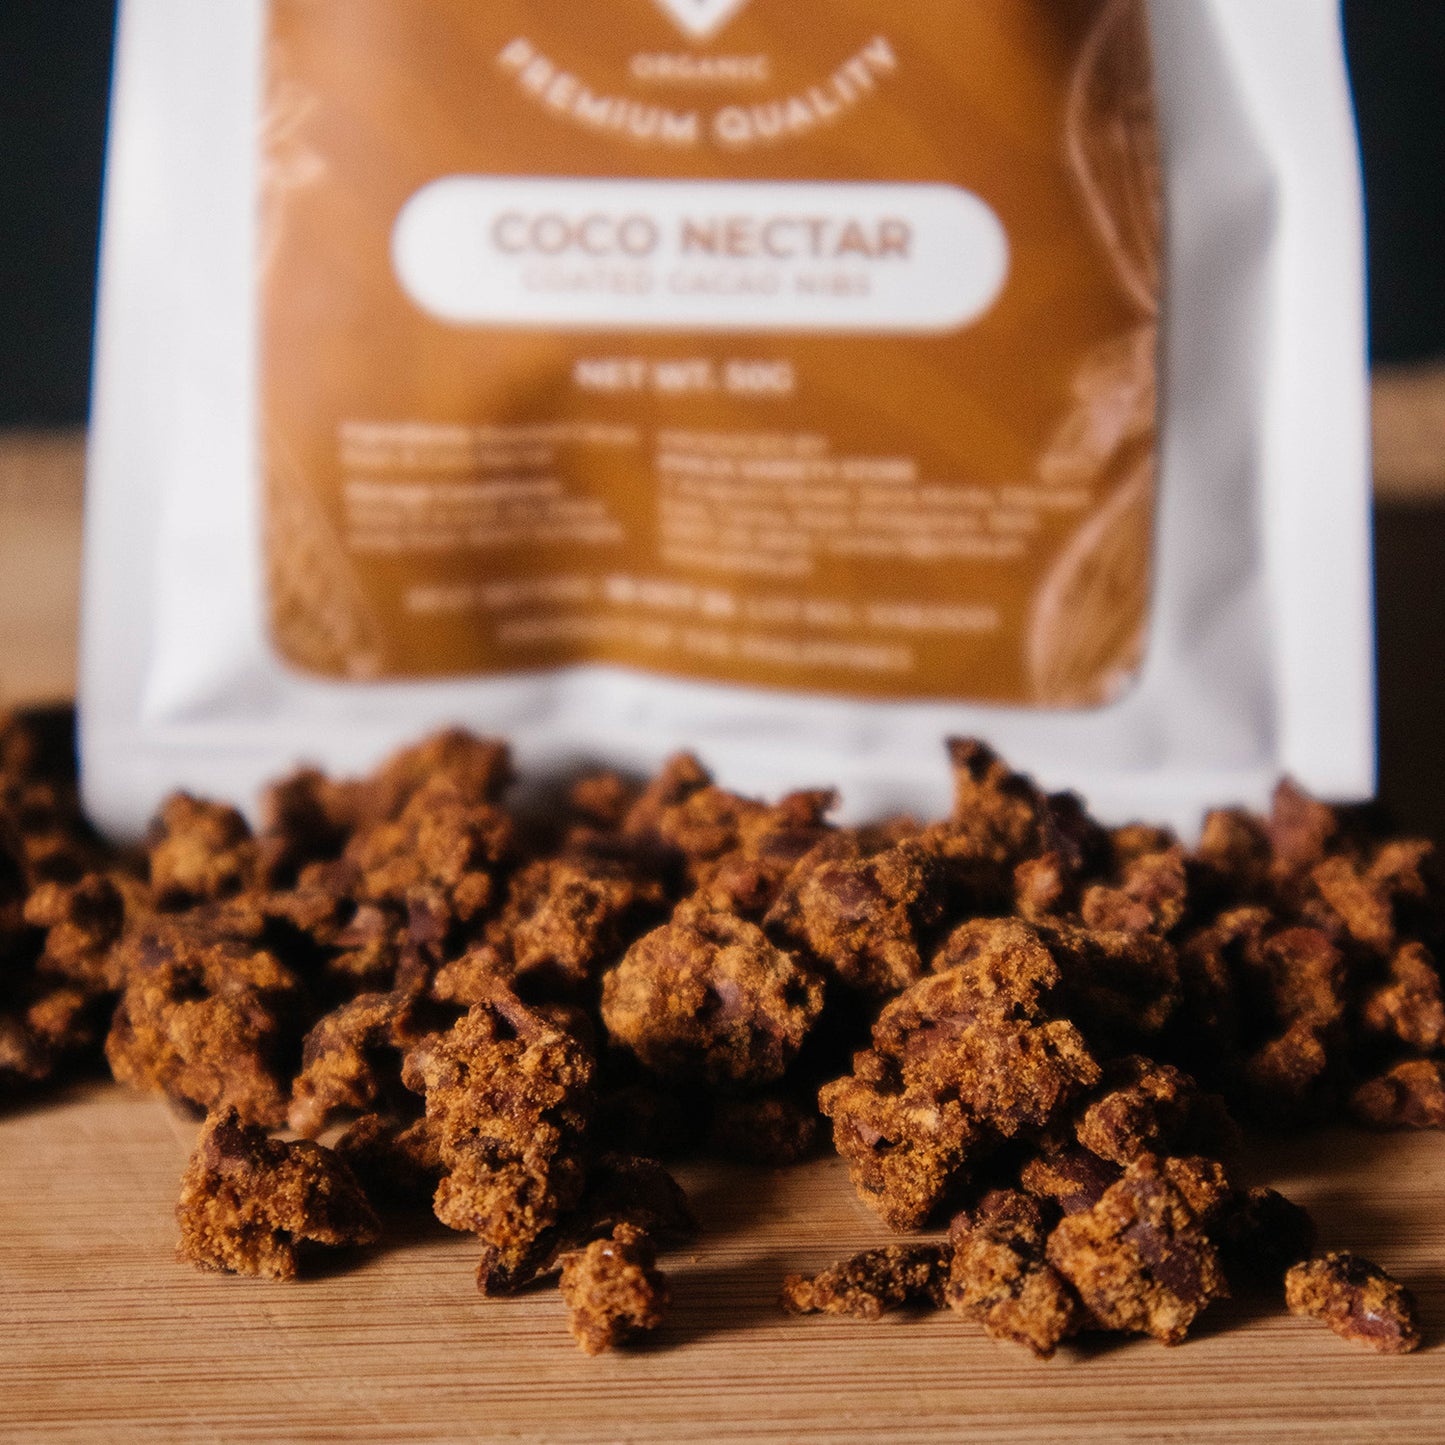 Mindanao - Coco Nectar Coated Cacao Nibs